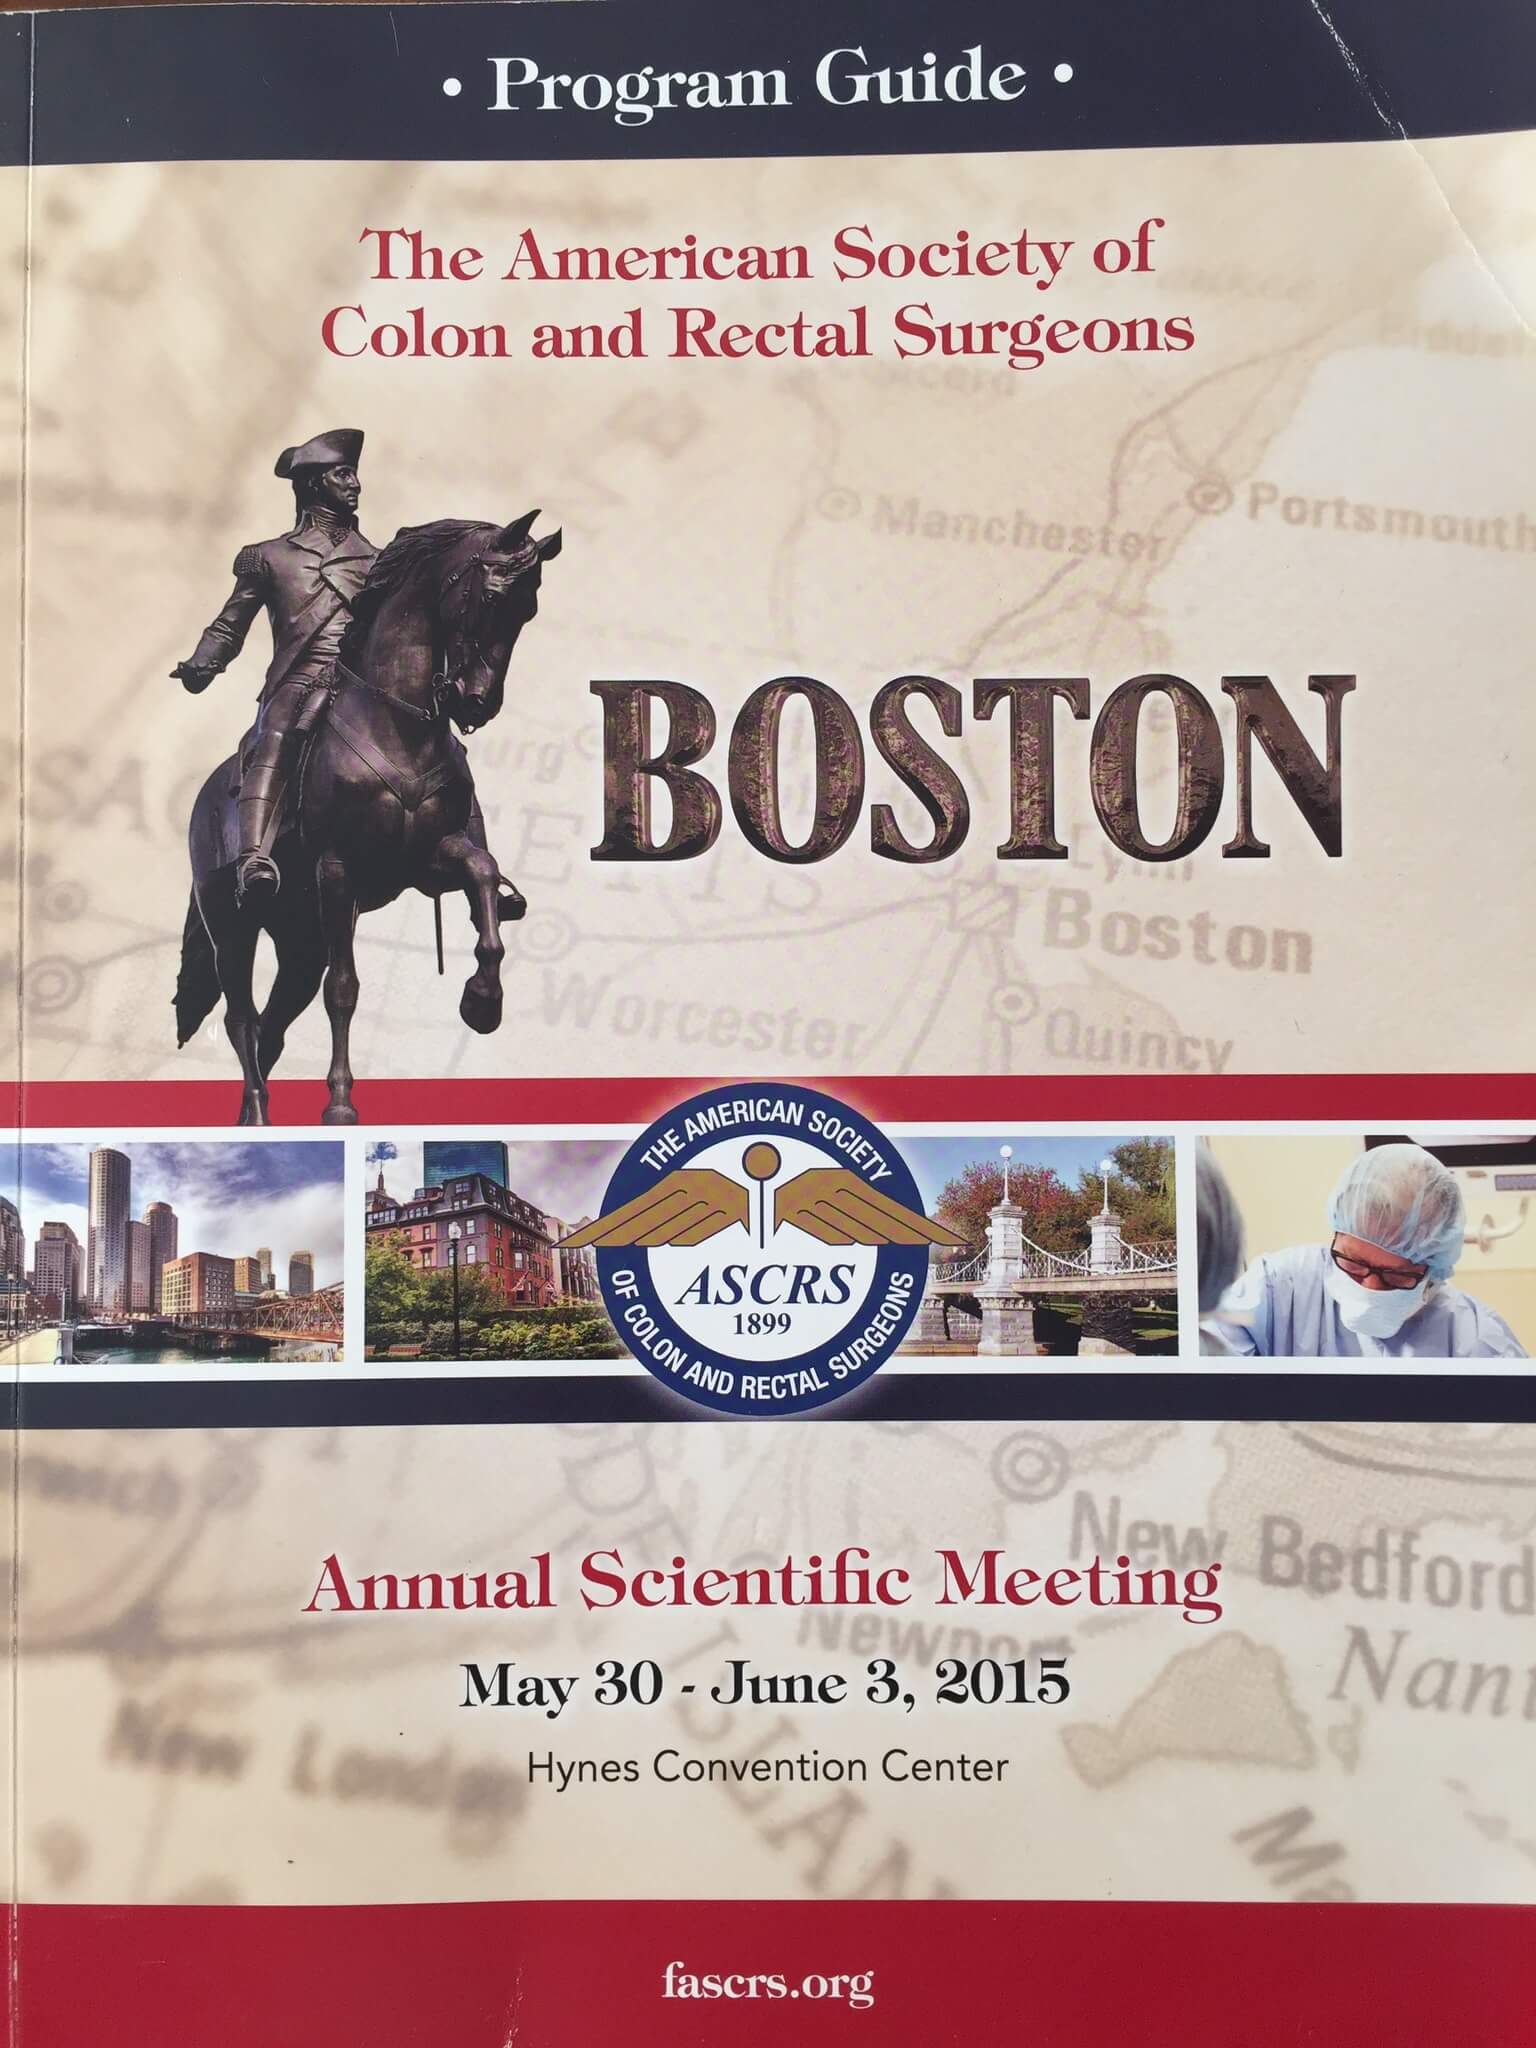 Участие в конгрессе Американского общества колоректальных хирургов (ASCRS) (Boston, 2015).